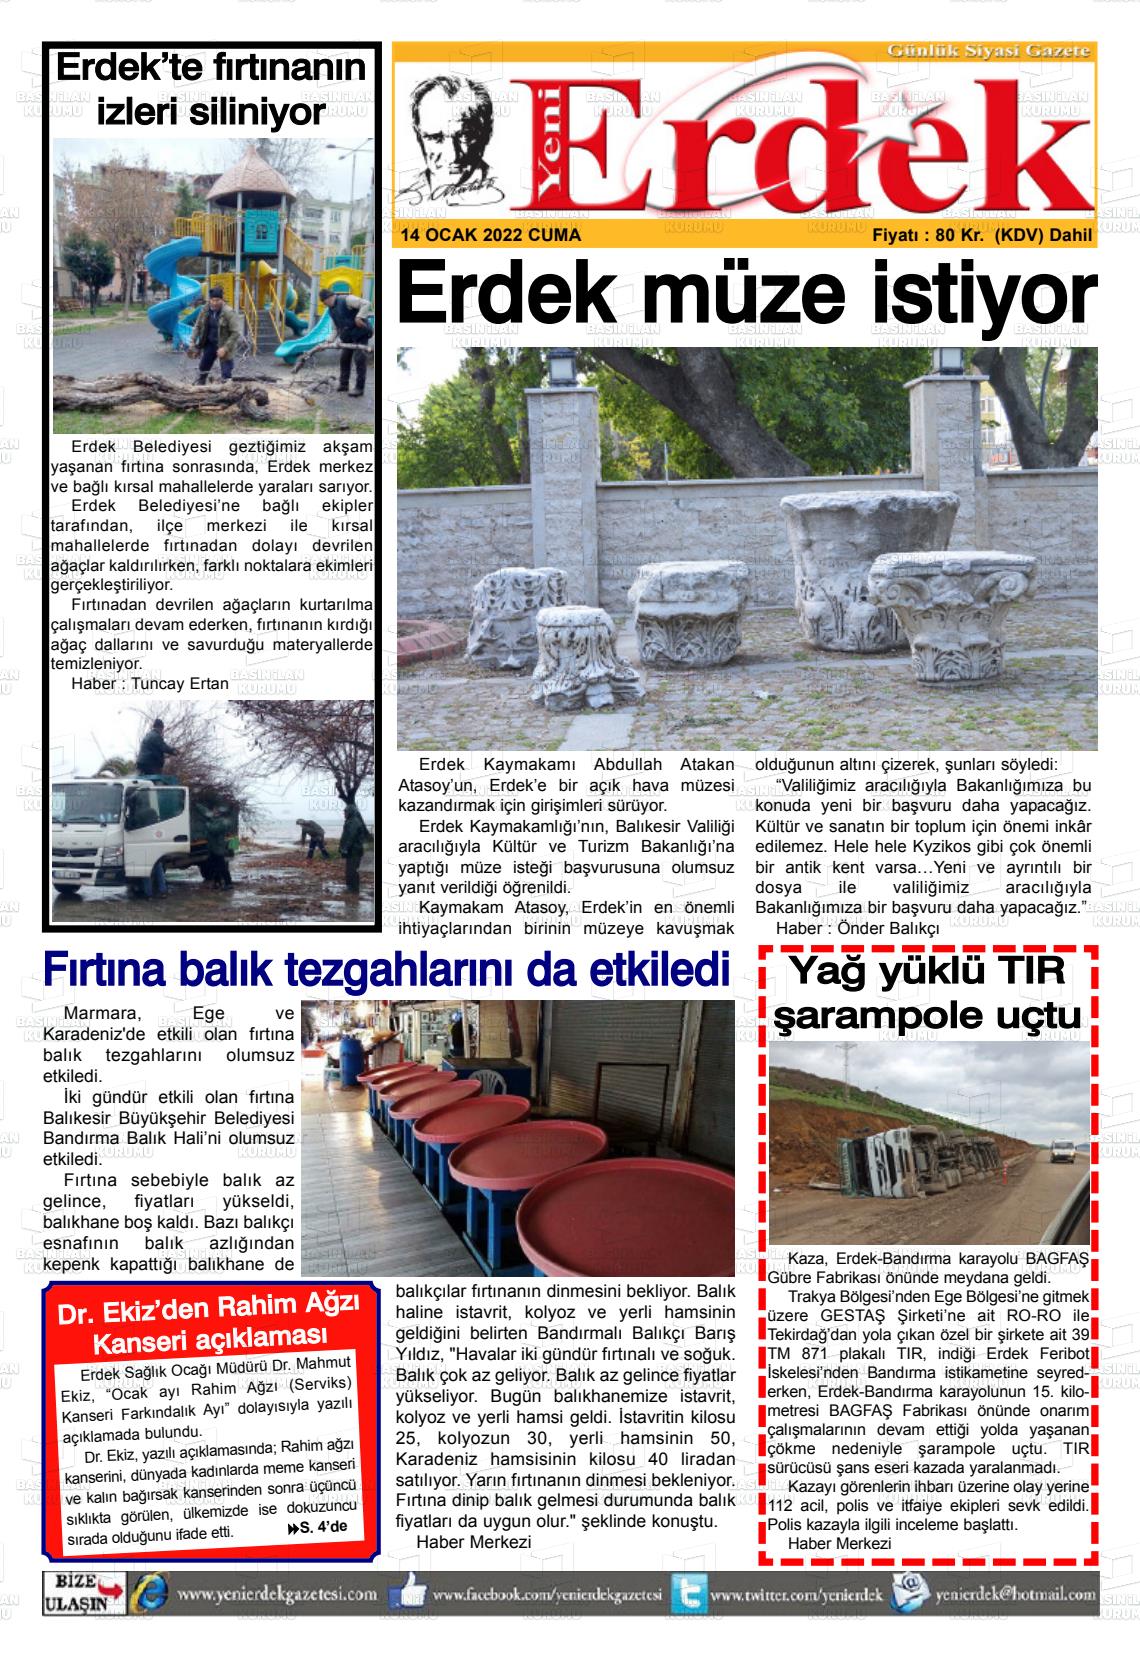 14 Ocak 2022 Yeni Erdek Gazete Manşeti